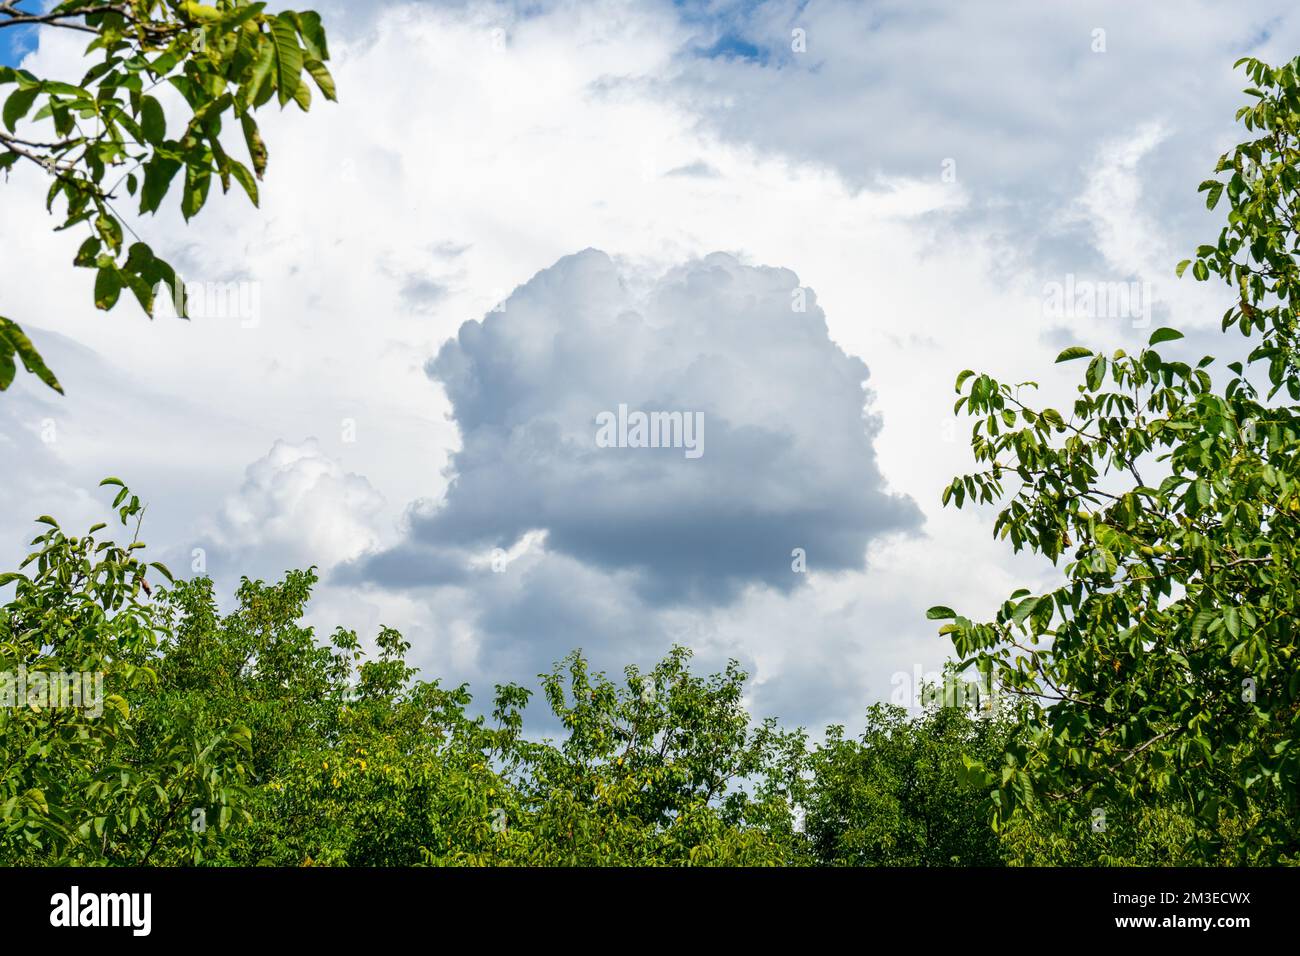 Eine kleine schwarze Wolke am weißen Himmel wird von den Zweigen grüner Bäume eingerahmt Stockfoto